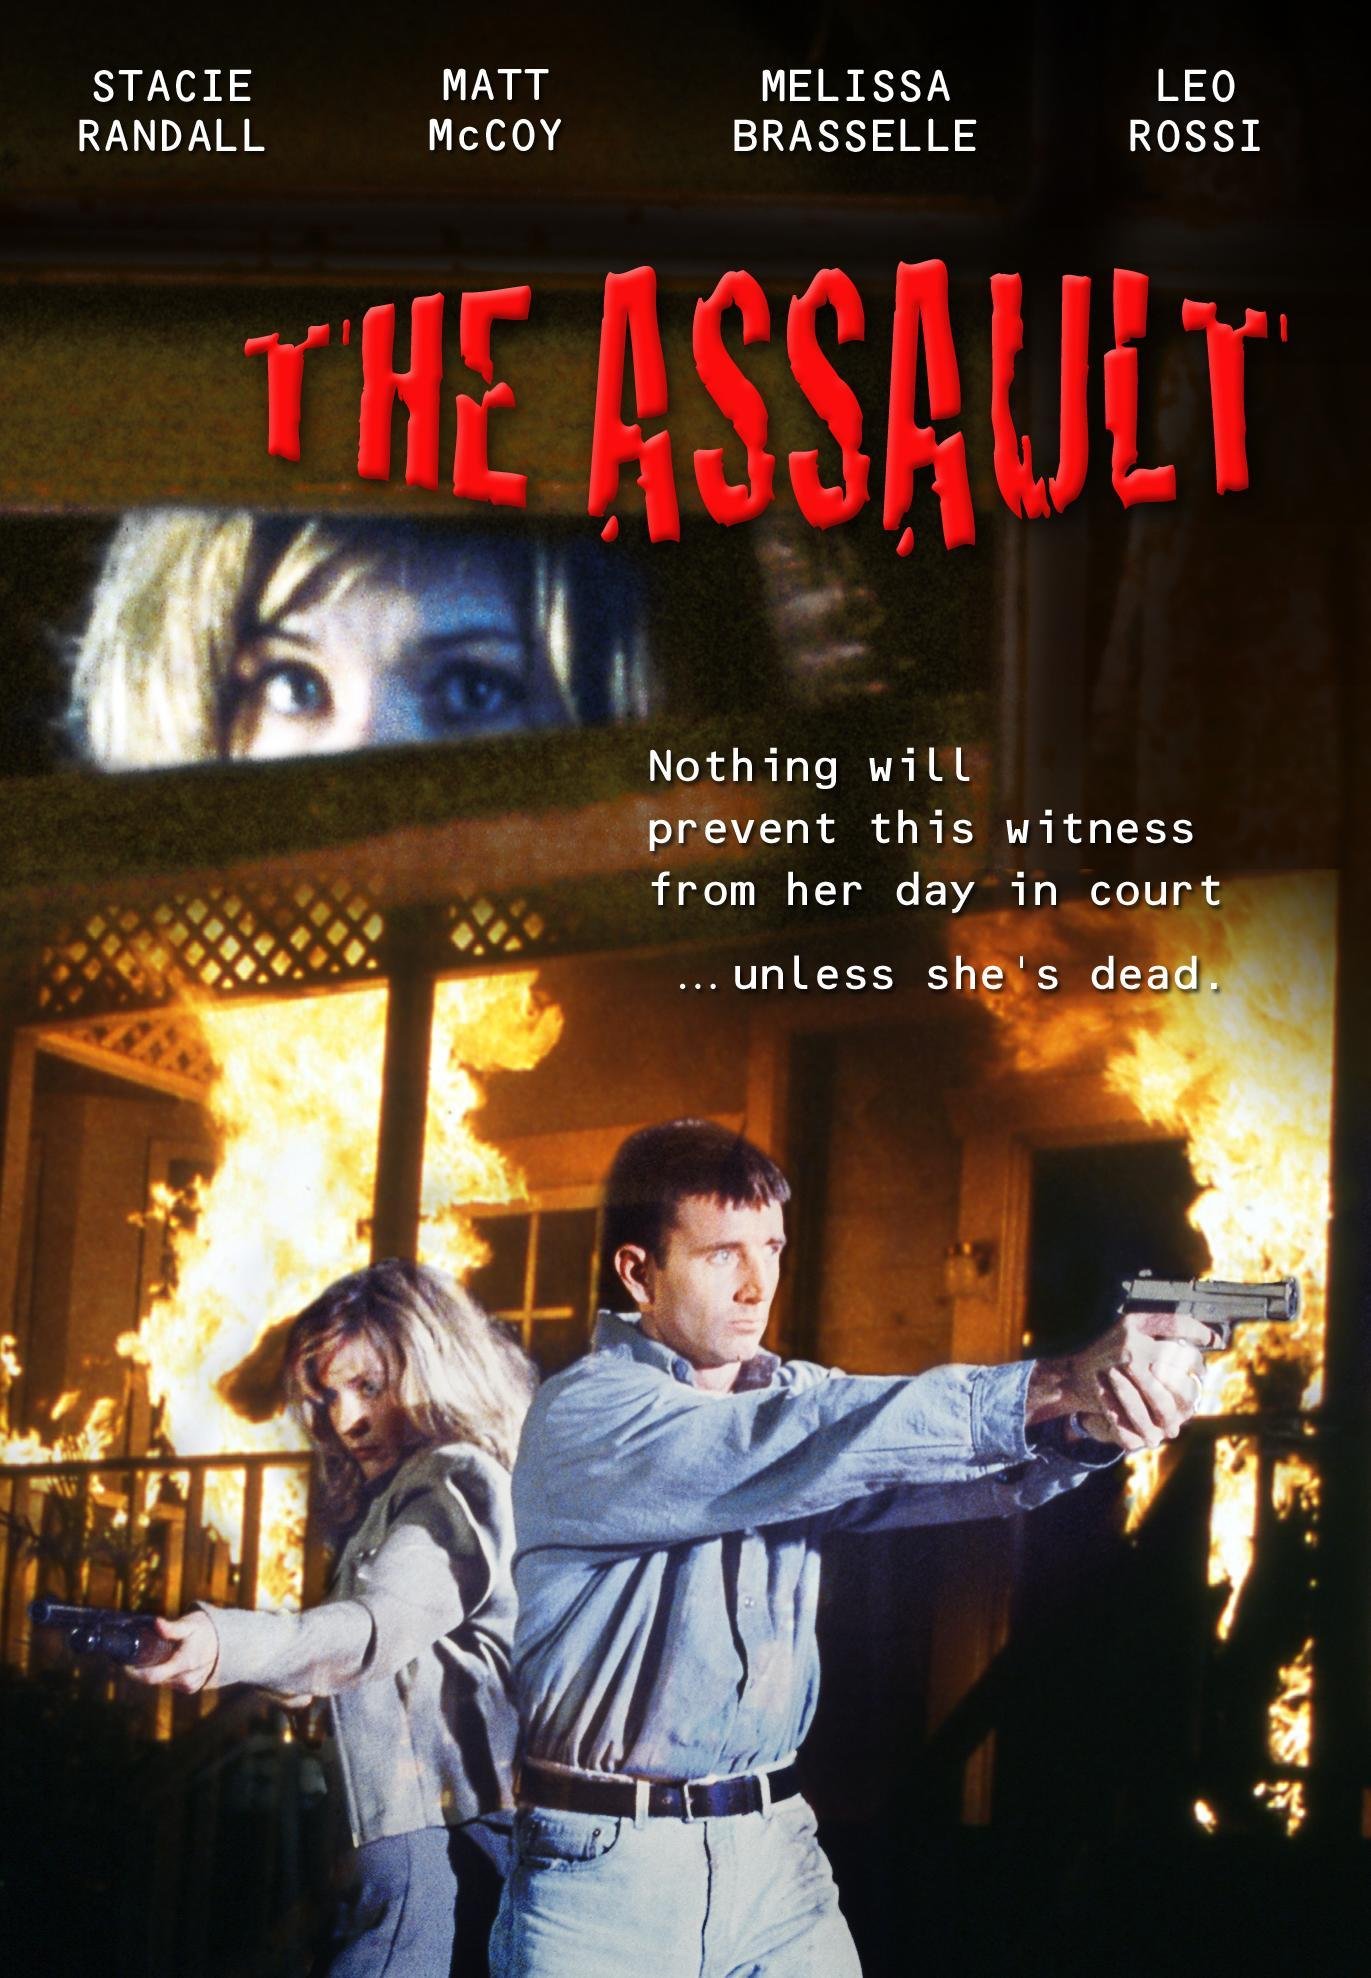 The Assault (1998) Screenshot 2